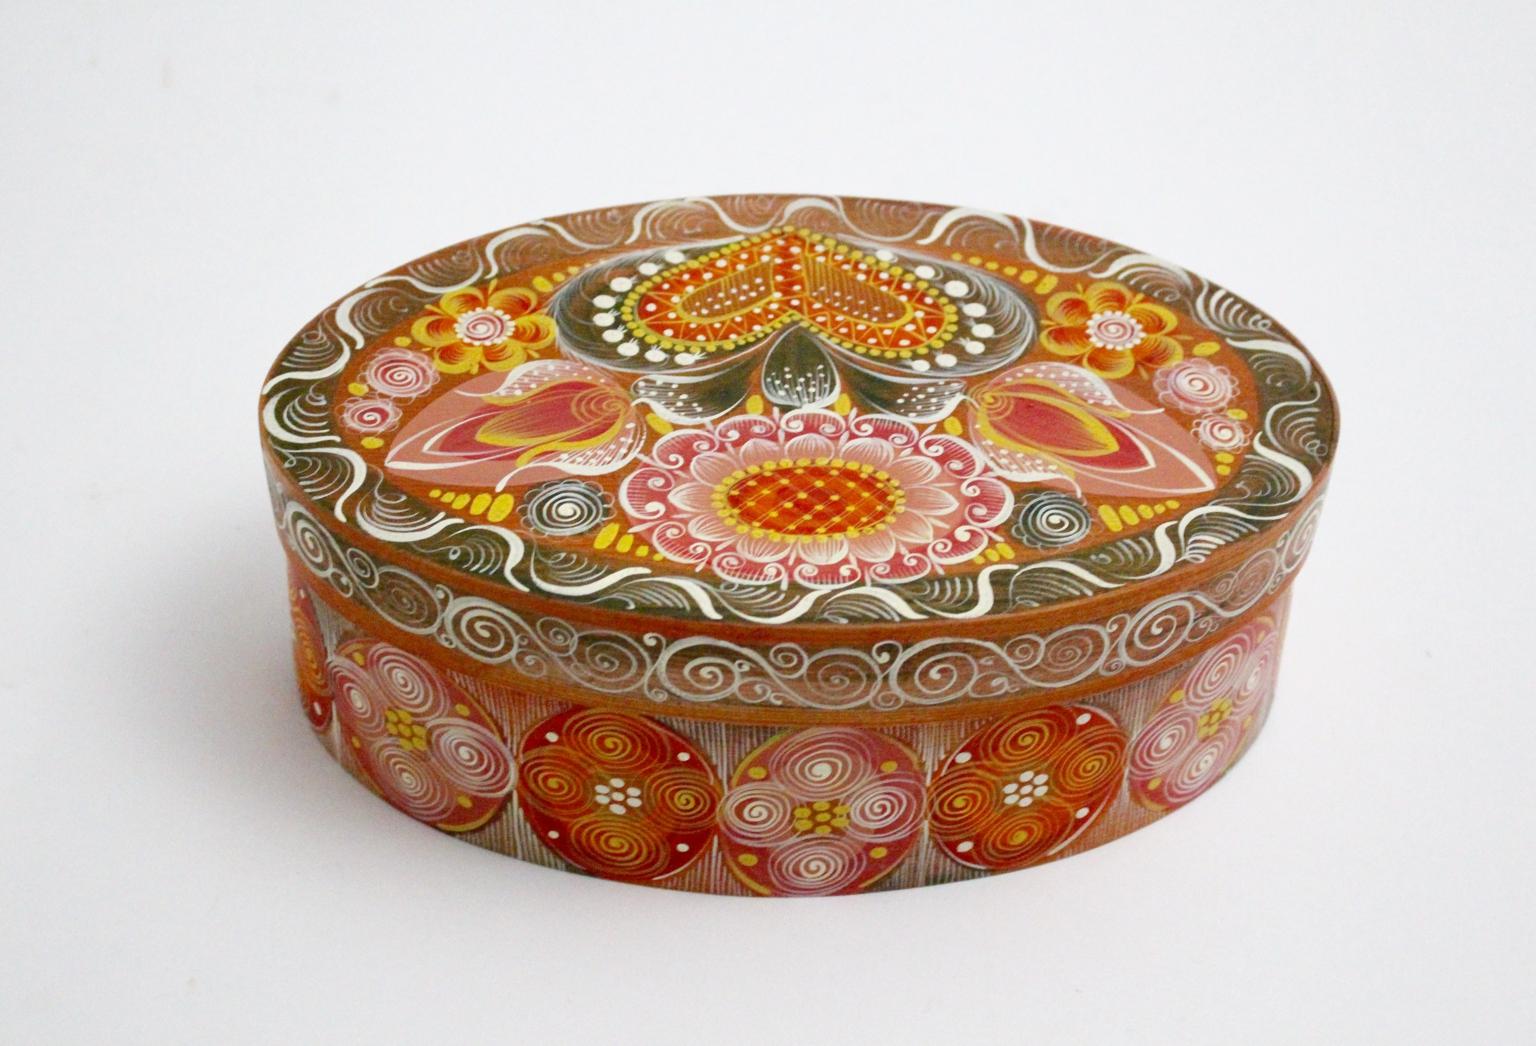 Die Folk-Art-Splintbox zeigt mehrfarbige, handgemalte ländliche Dekore wie Blumen und Herzen.
Es wurde in den 1950er Jahren in Österreich entworfen und hergestellt.
Die ovale Schachtel besteht aus einem Bodenteil und einem Deckel.
Der Zustand ist